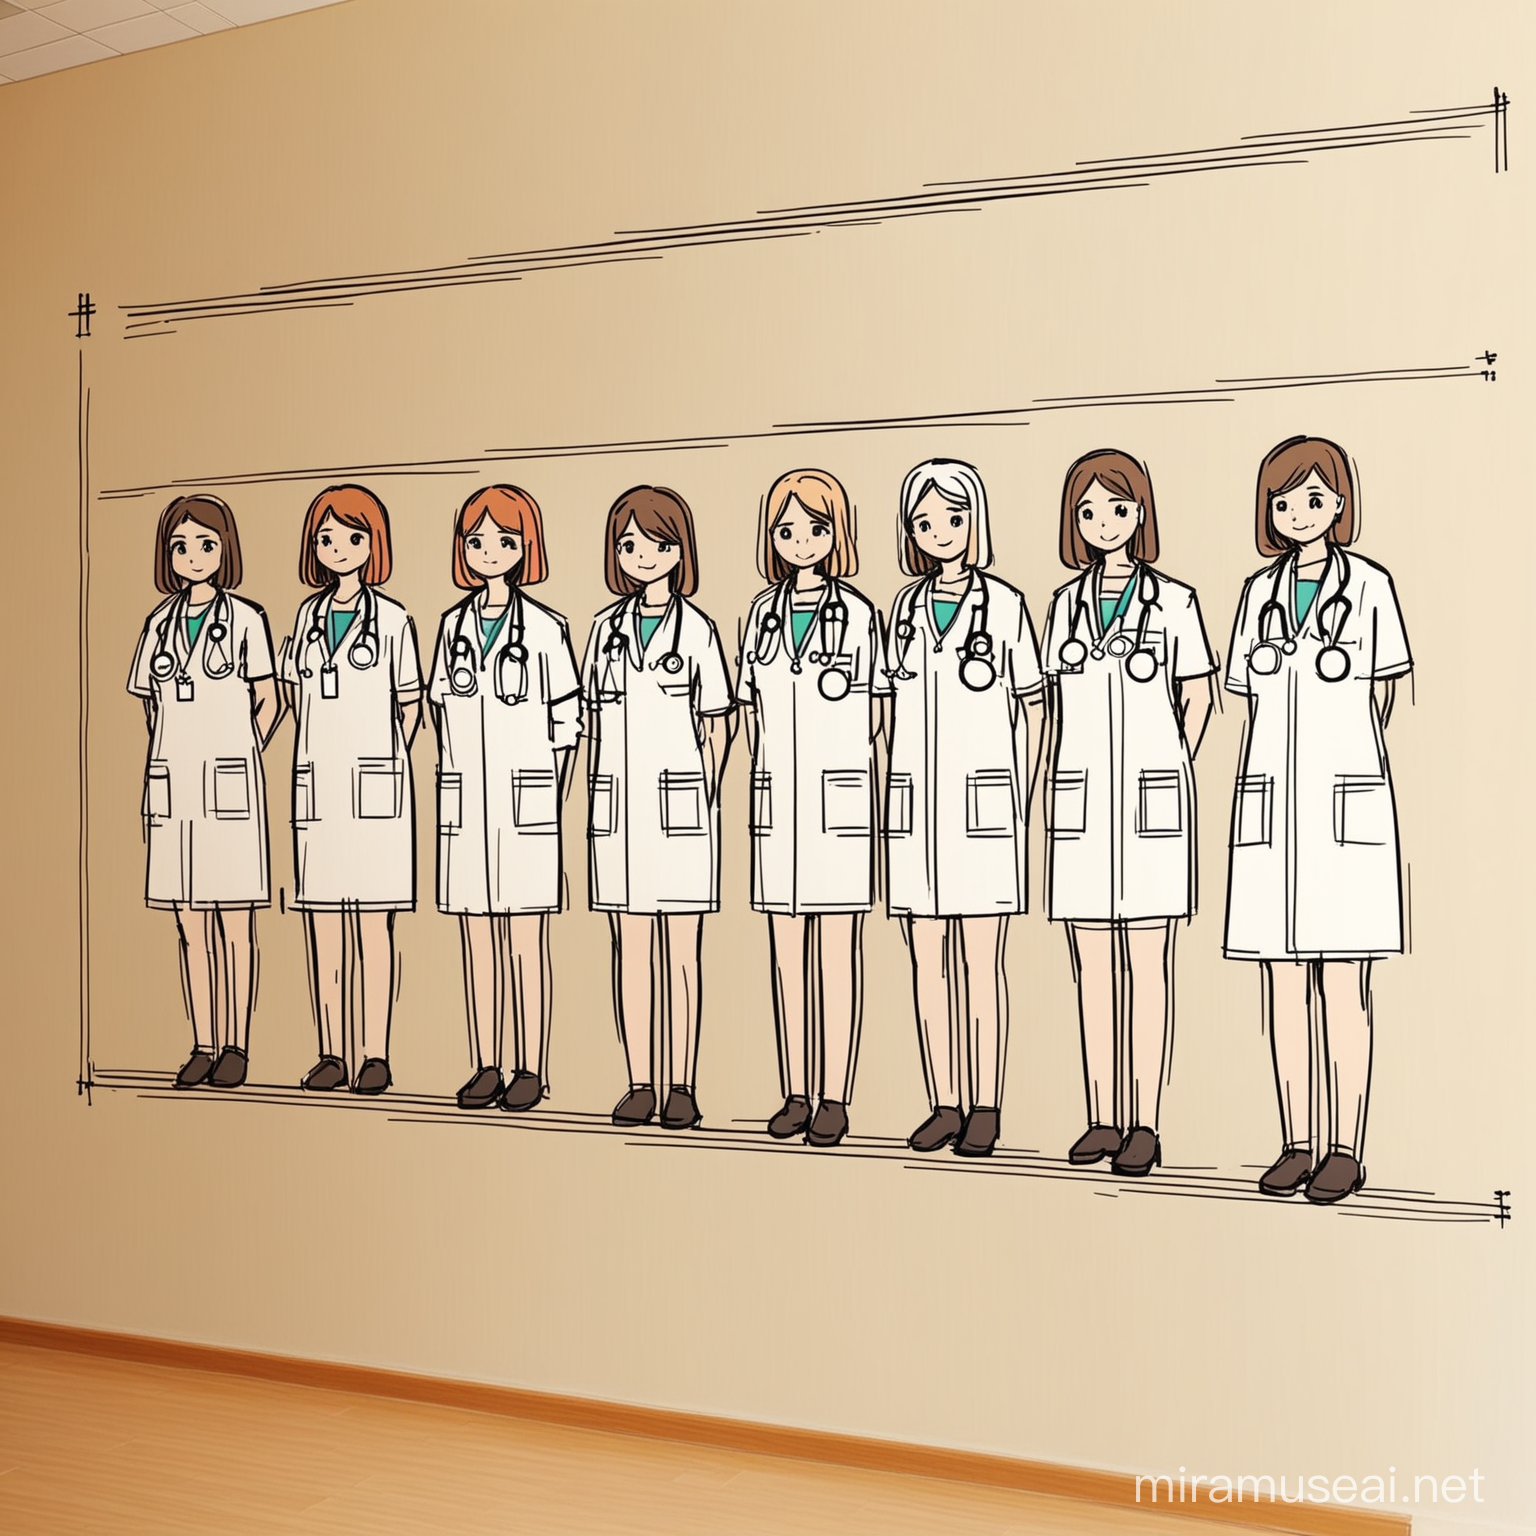 На стене рисунок . Група женщин врачей польки. Нарисовано простими линиями . Даже ребёнок сможет перерисовать . Очень простой и приятный рисунок . Цвета ни яркие 